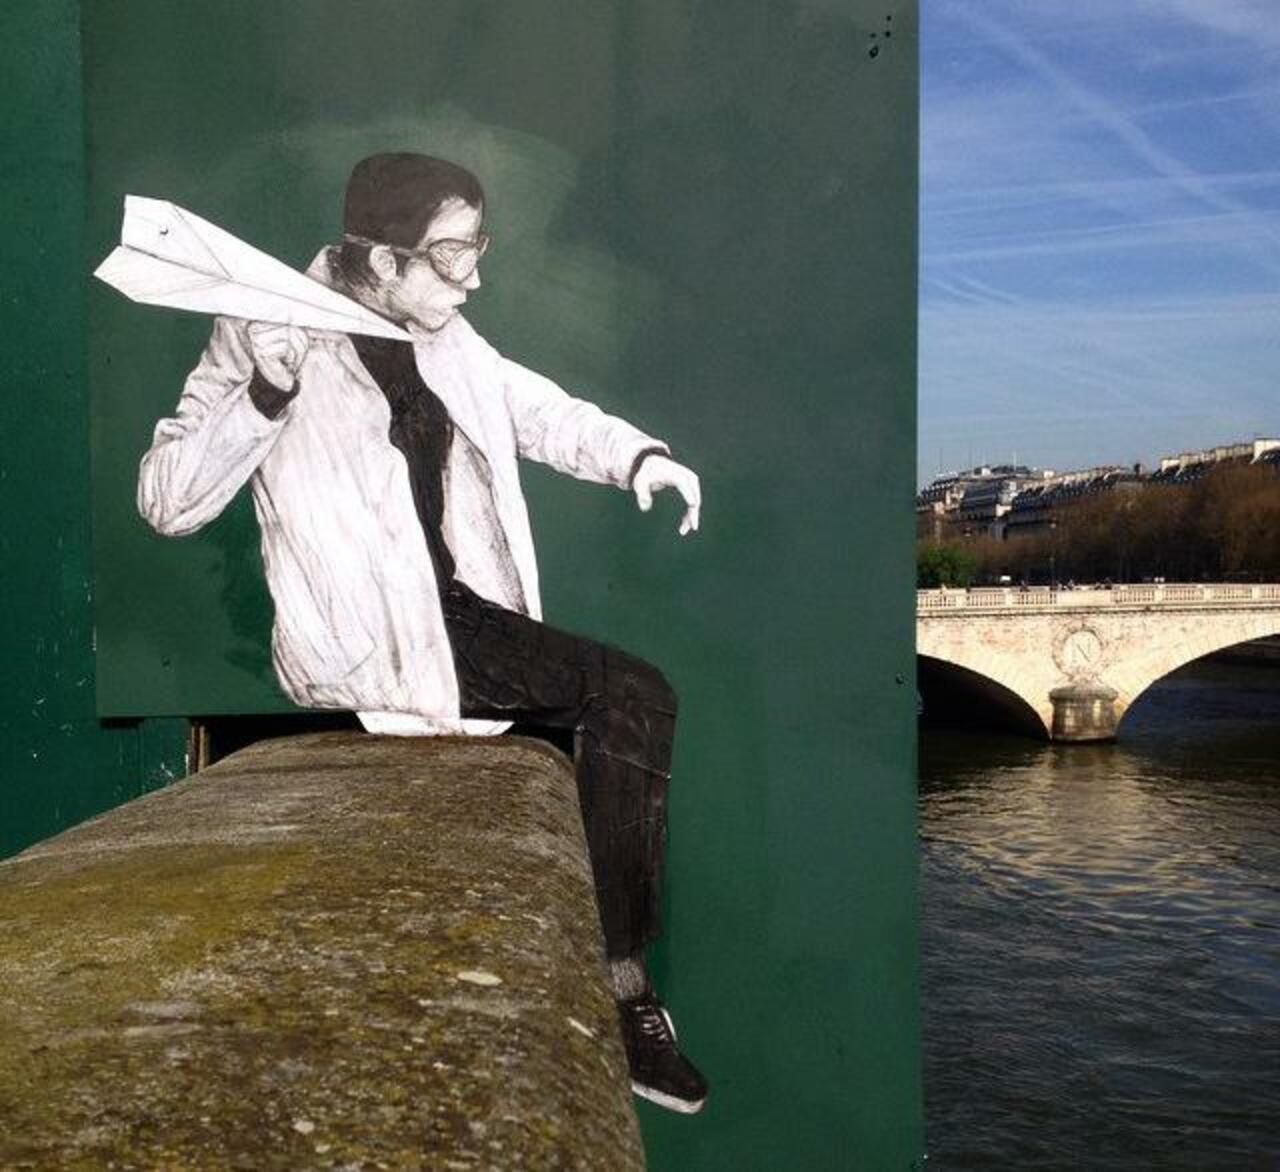 New Street Art by Levalet in Paris

#art #graffiti #arte #streetart http://t.co/XAJ5chbBba